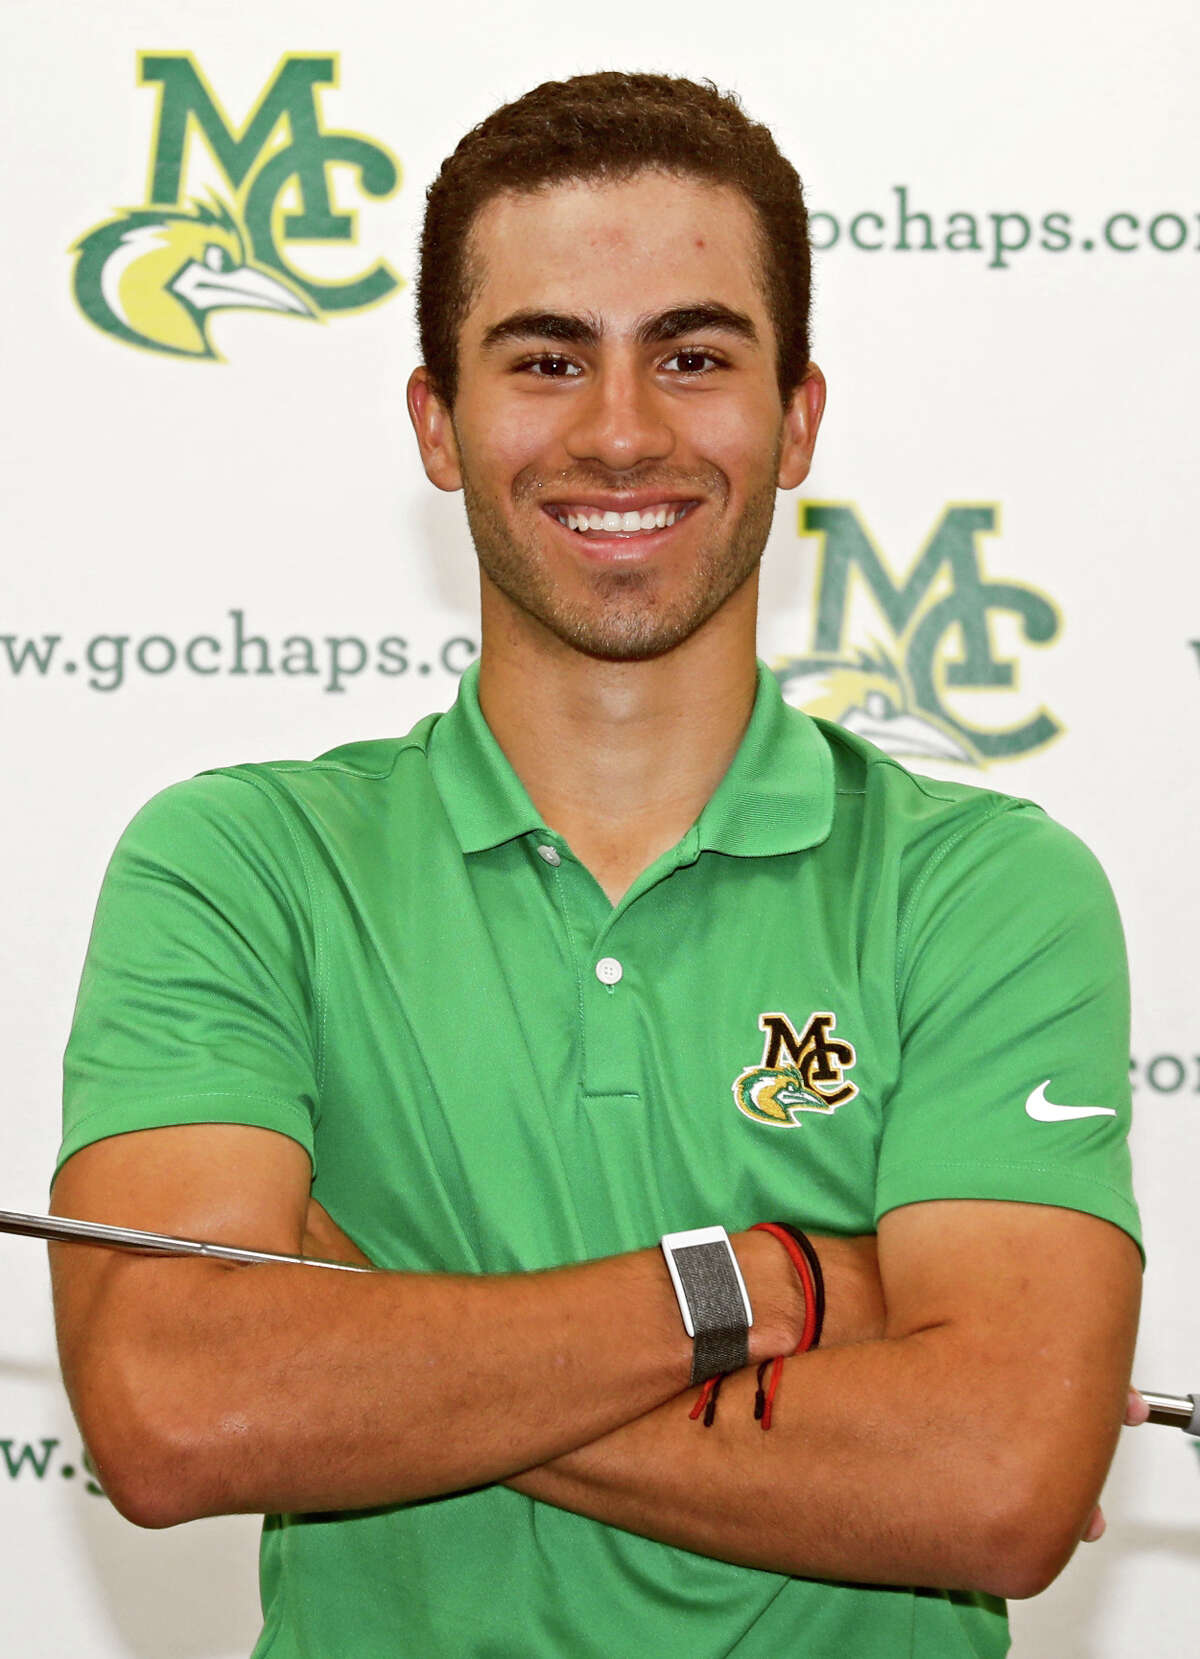 Midland College golfer Angel Guerra